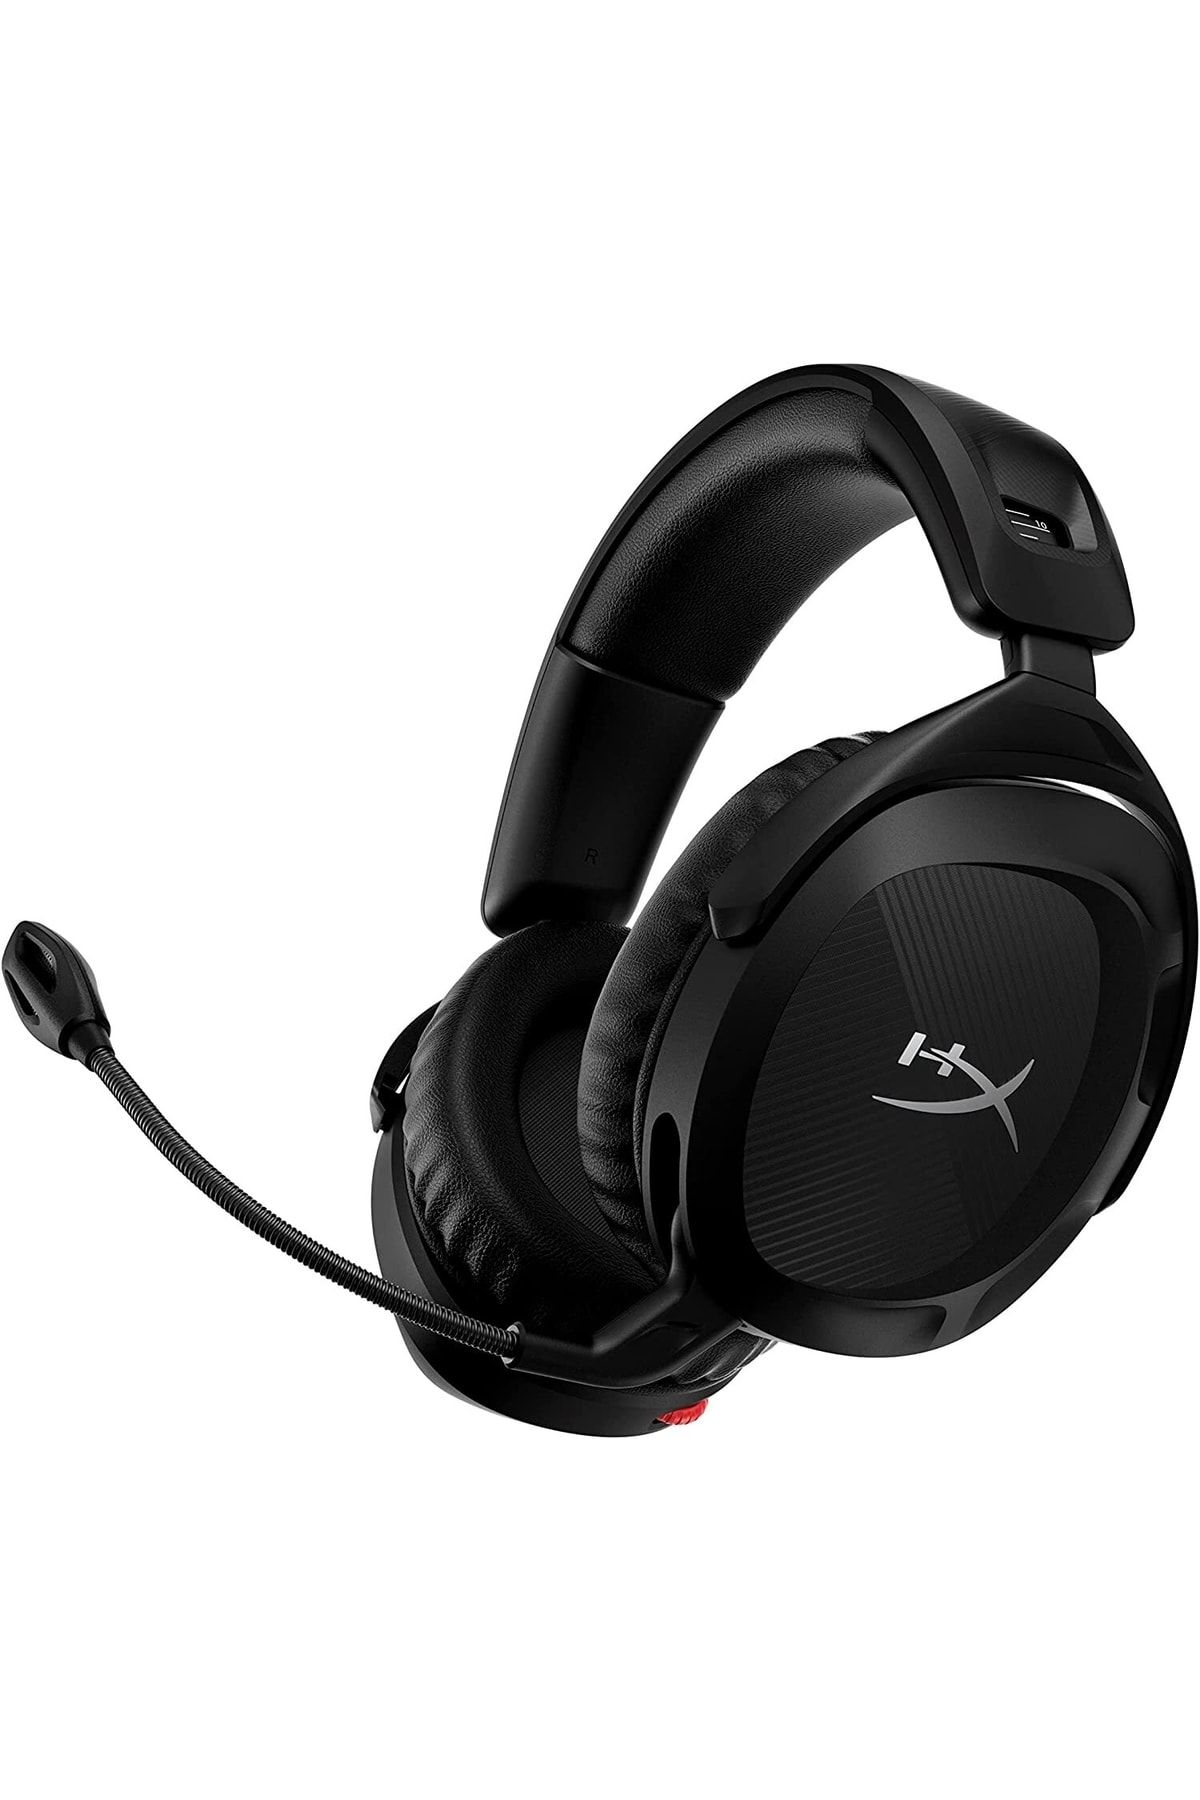 HyperX Cloud Stinger 2 Core – Pc Oyun Kulaklığı, Mikrofonlu Hafif Kulak Üstü Kulaklık, Döndürülebili